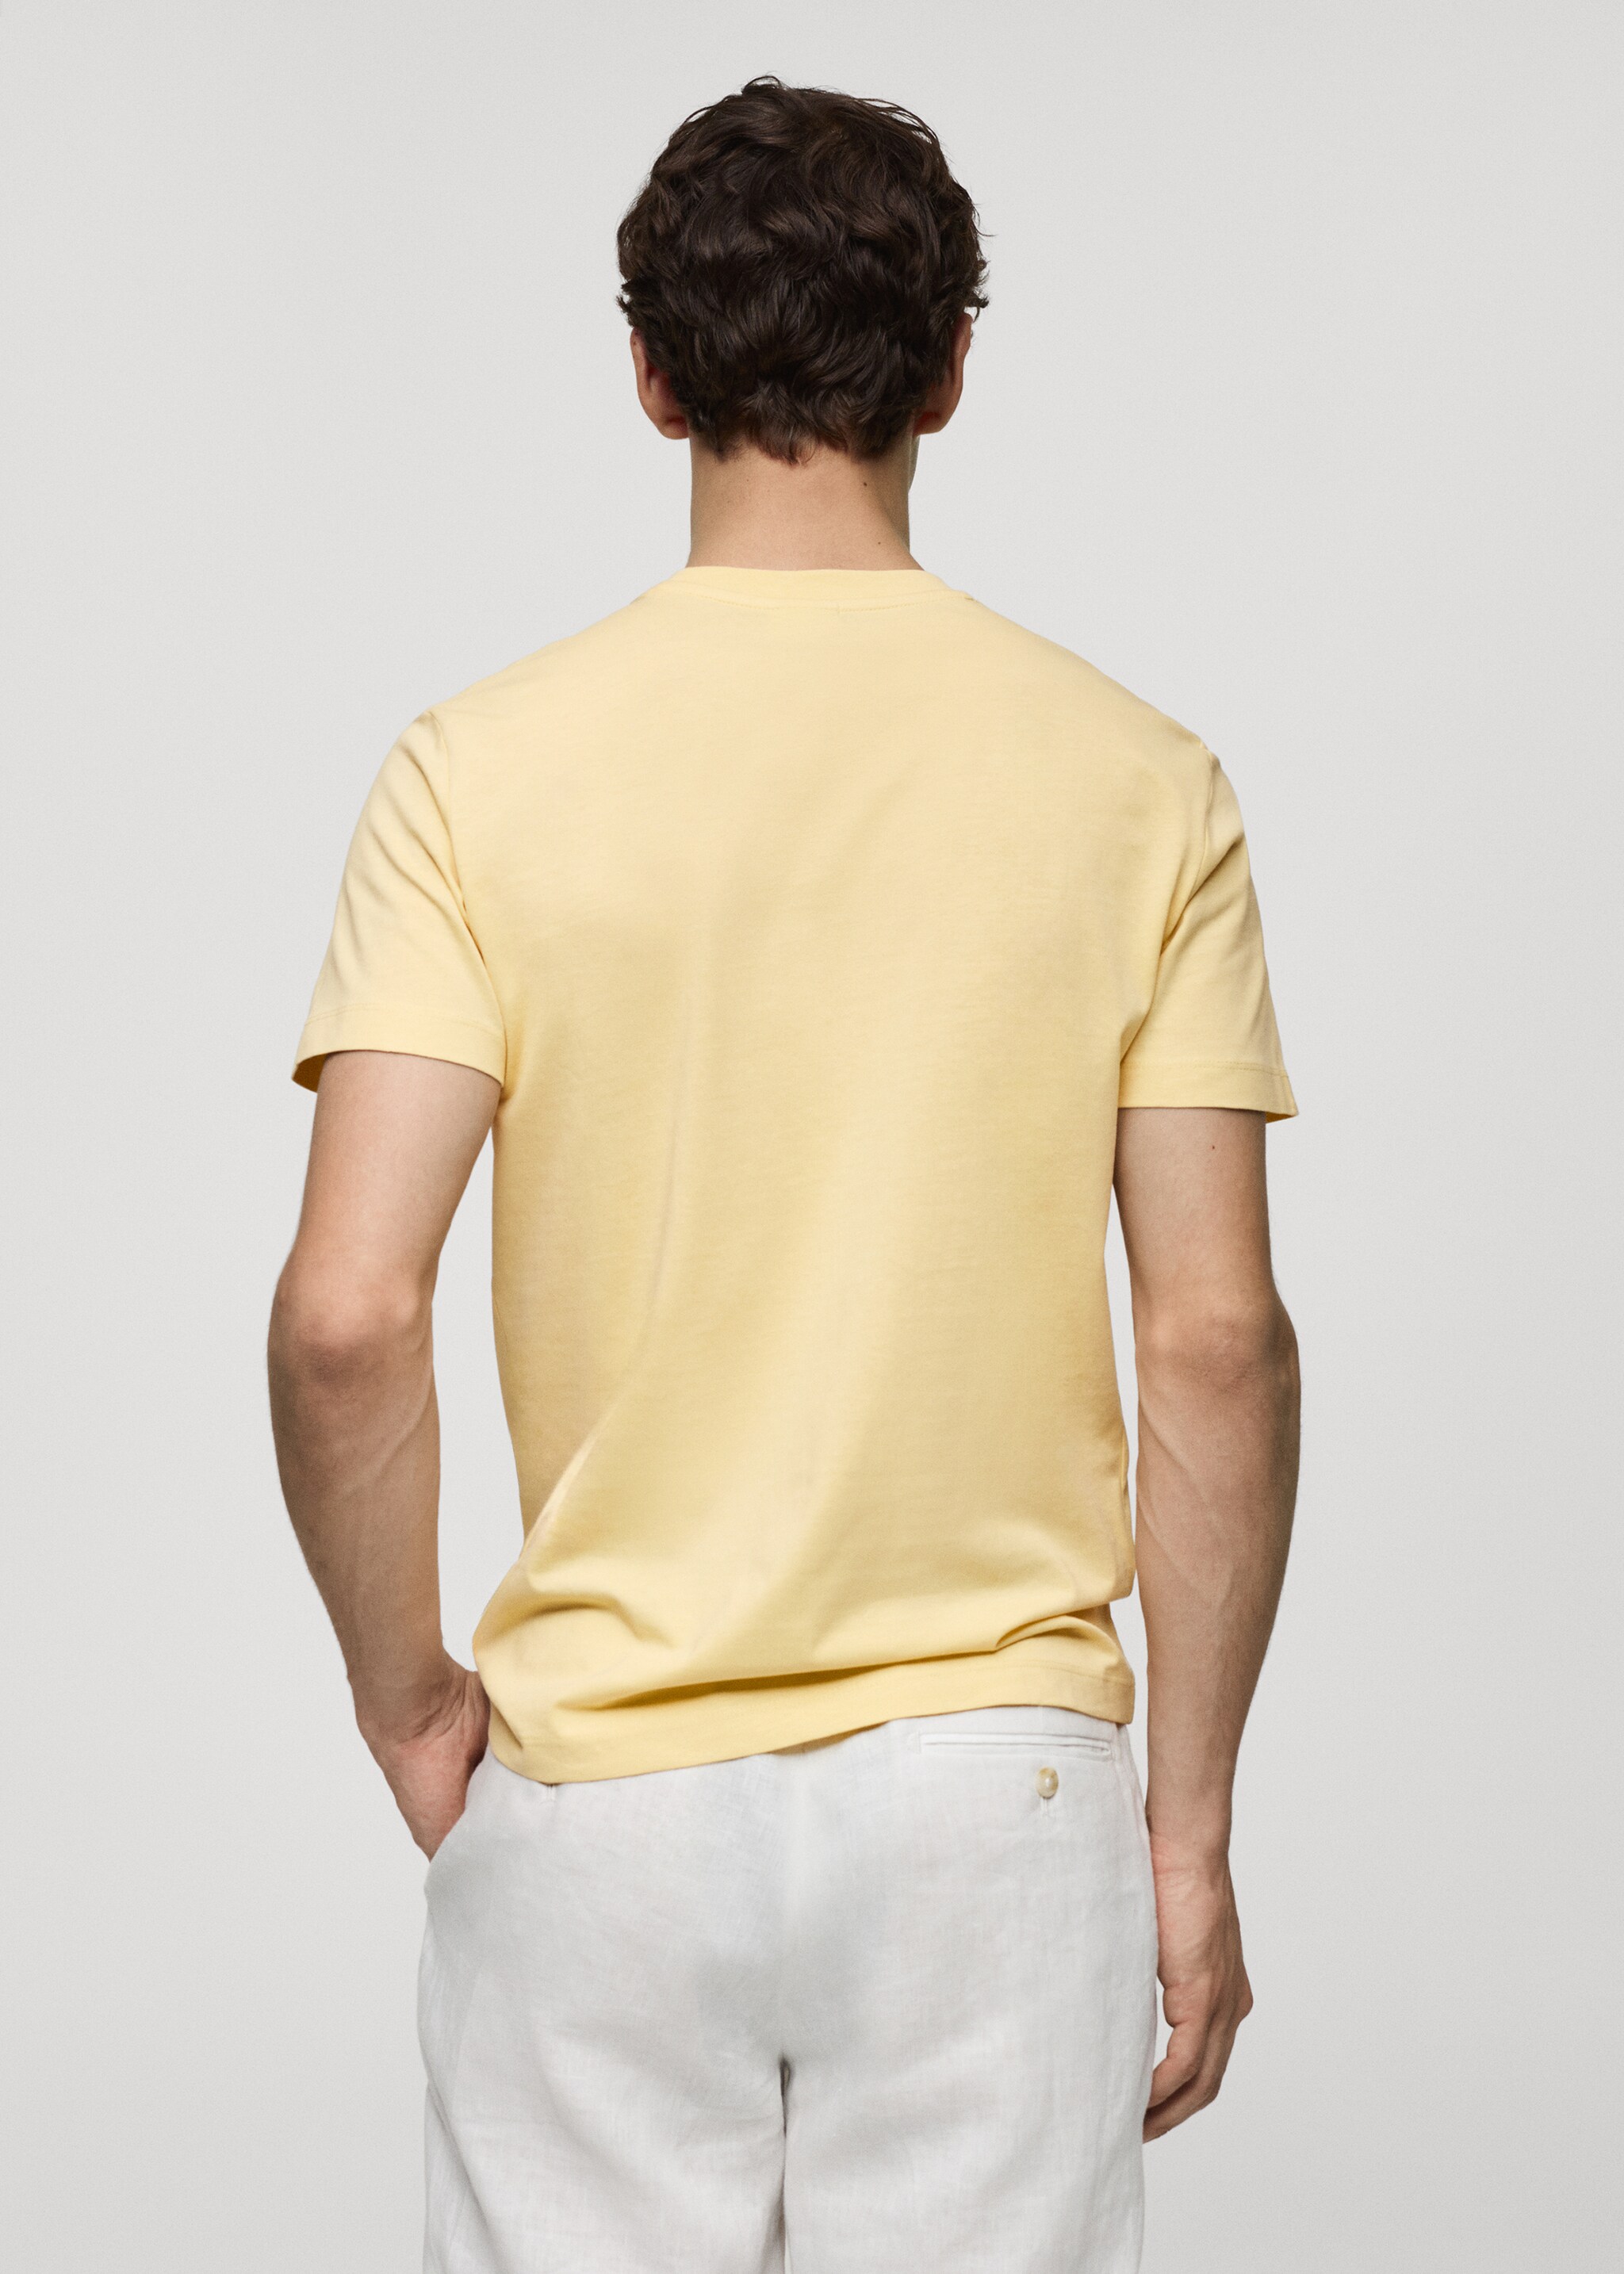 Базовая футболка из хлопка стретч - Обратная сторона изделия